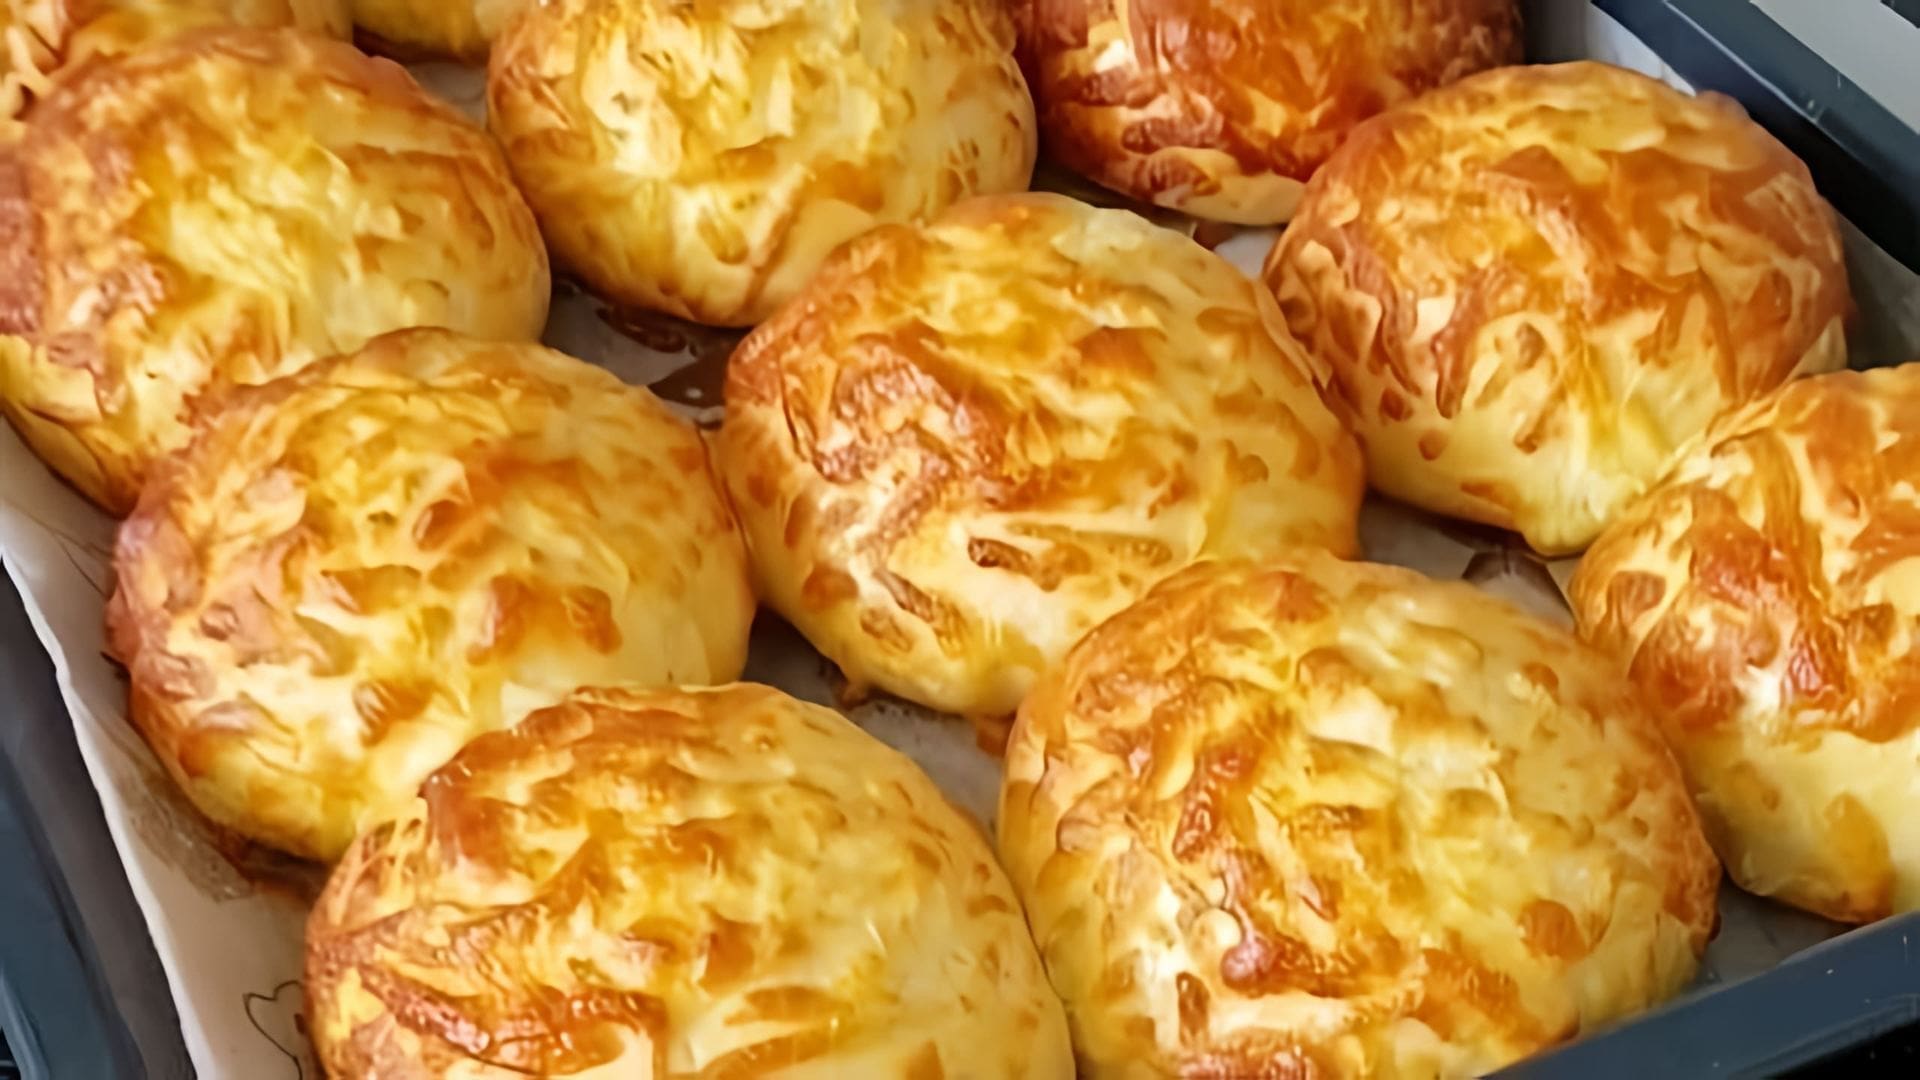 В этом видео демонстрируется рецепт приготовления картофельных пирожков с сыром